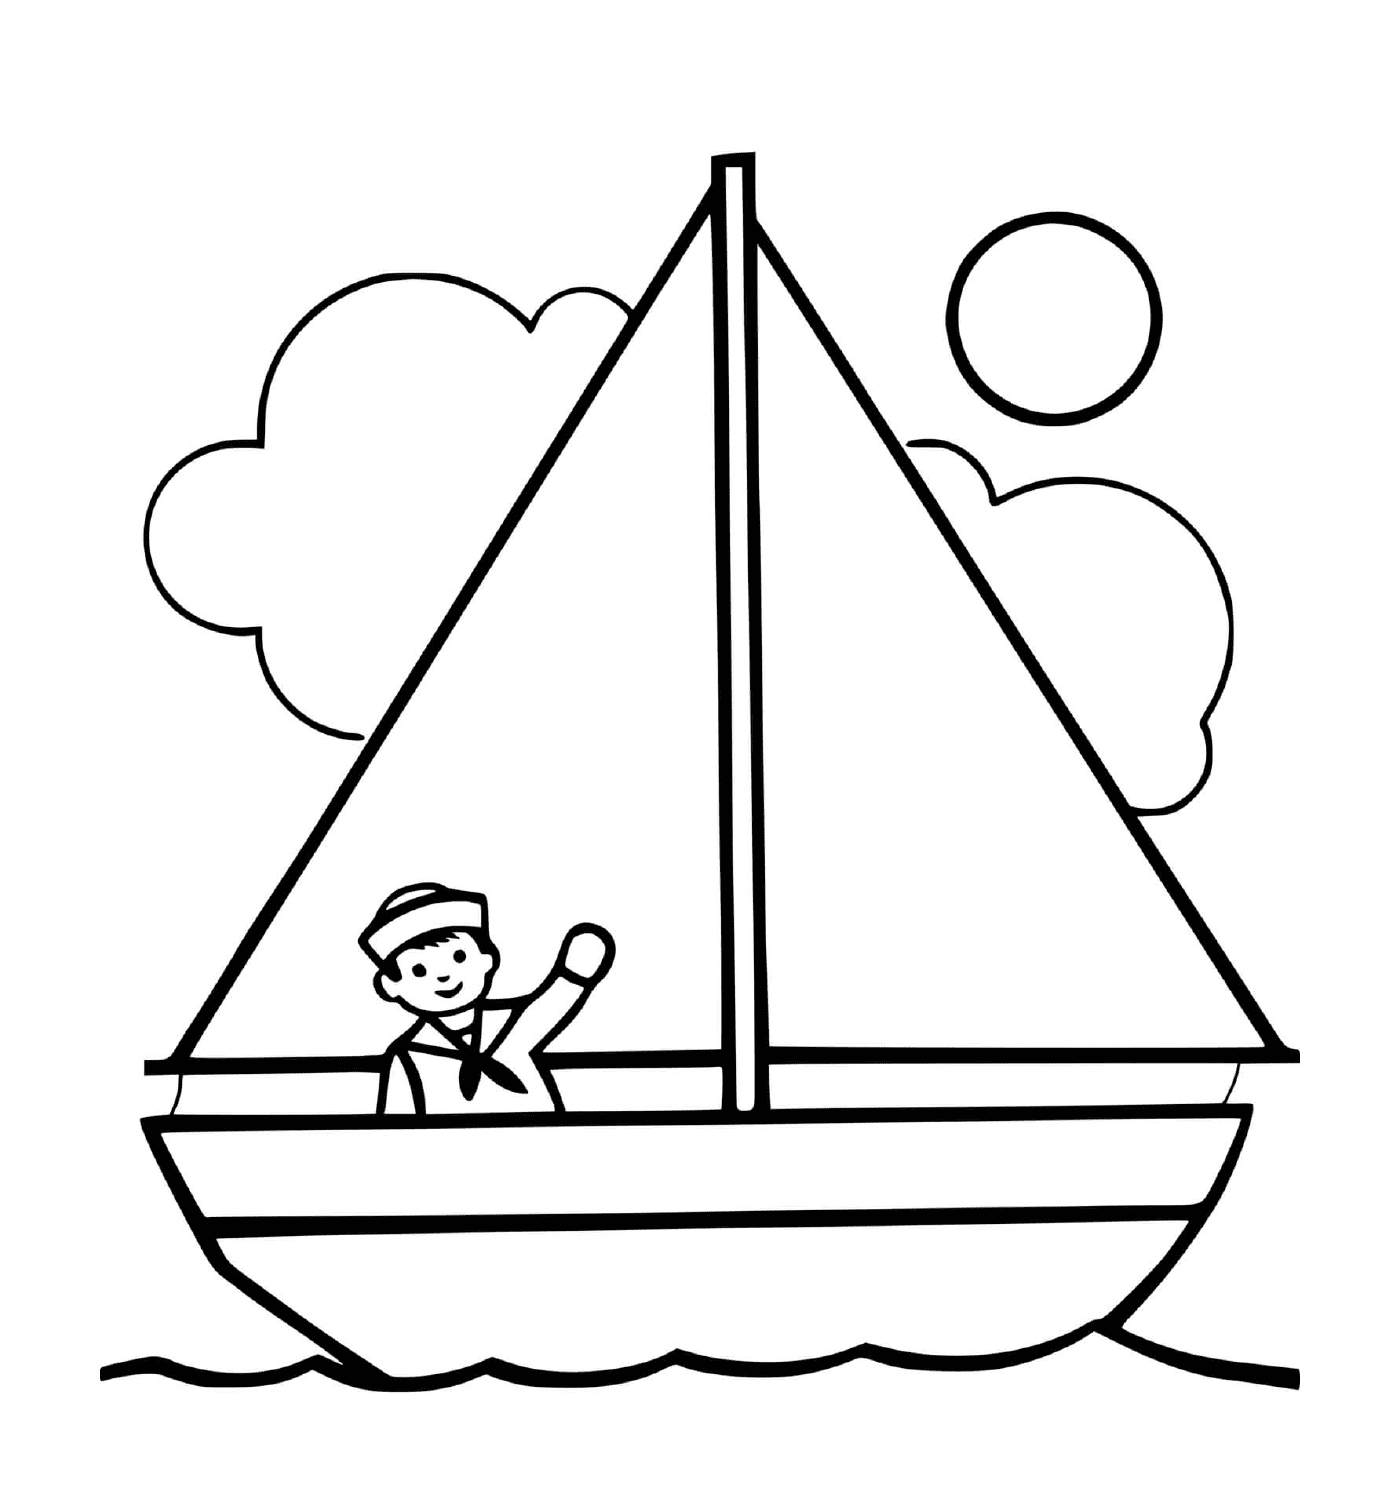  Um homem em um barco com um sol e um capitão 